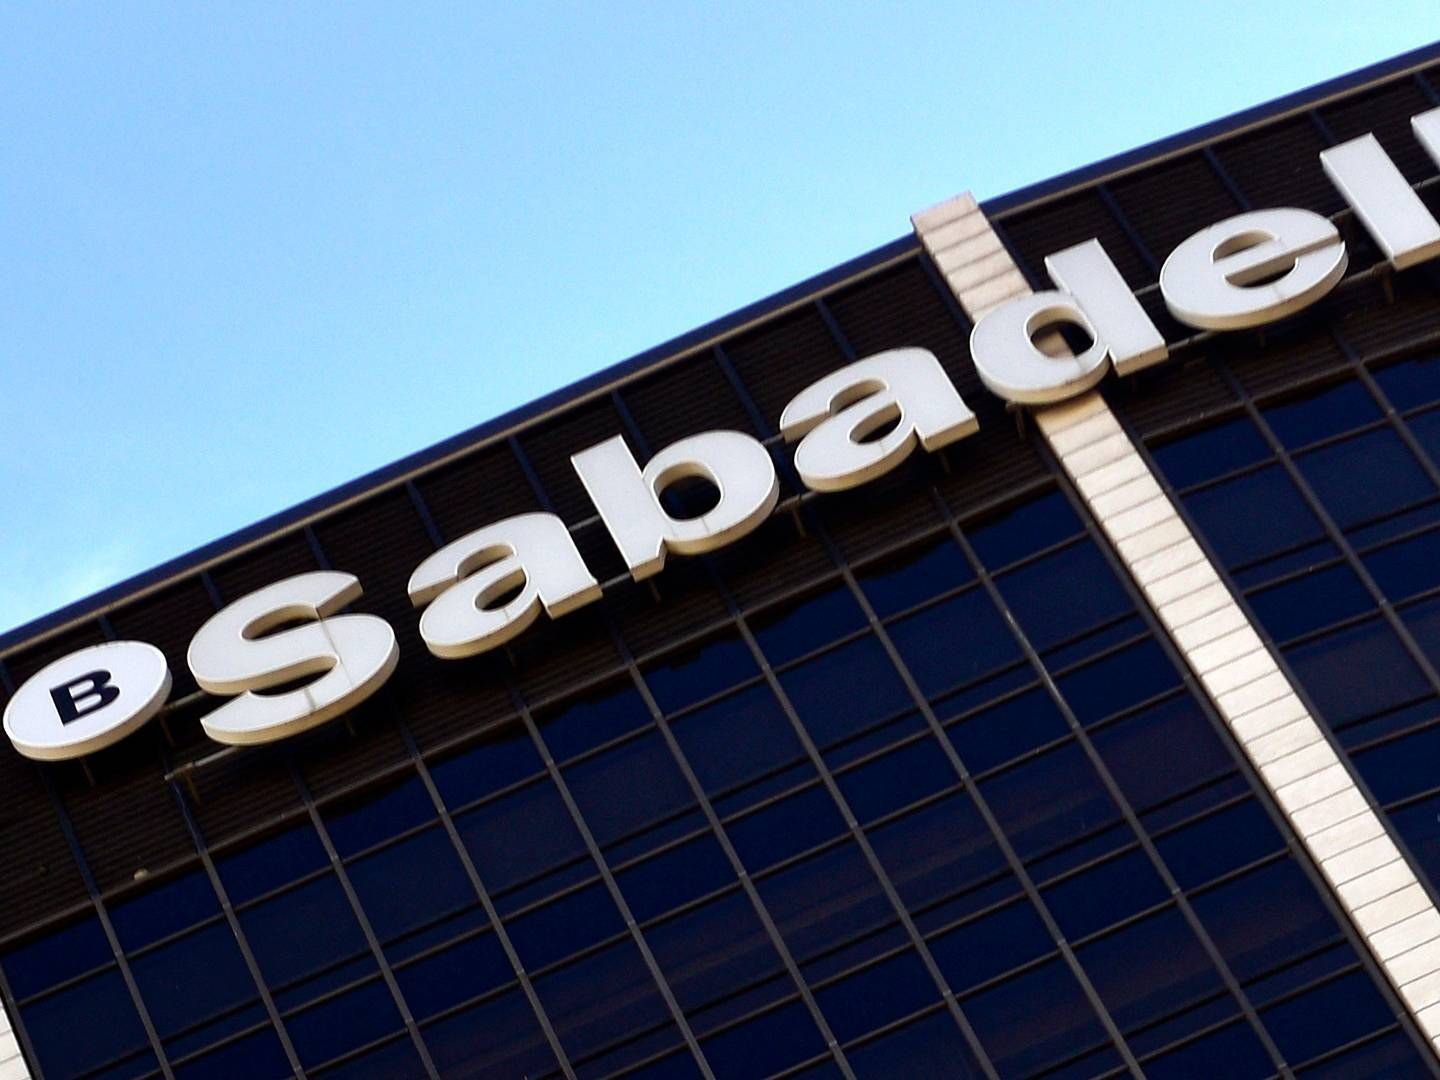 Banco Sabadell kan blive opkøbt, men direktør advarer mod konsekvenser, hvis myndigheder griber ind i handlen. | Foto: Pierre-philippe Marcou